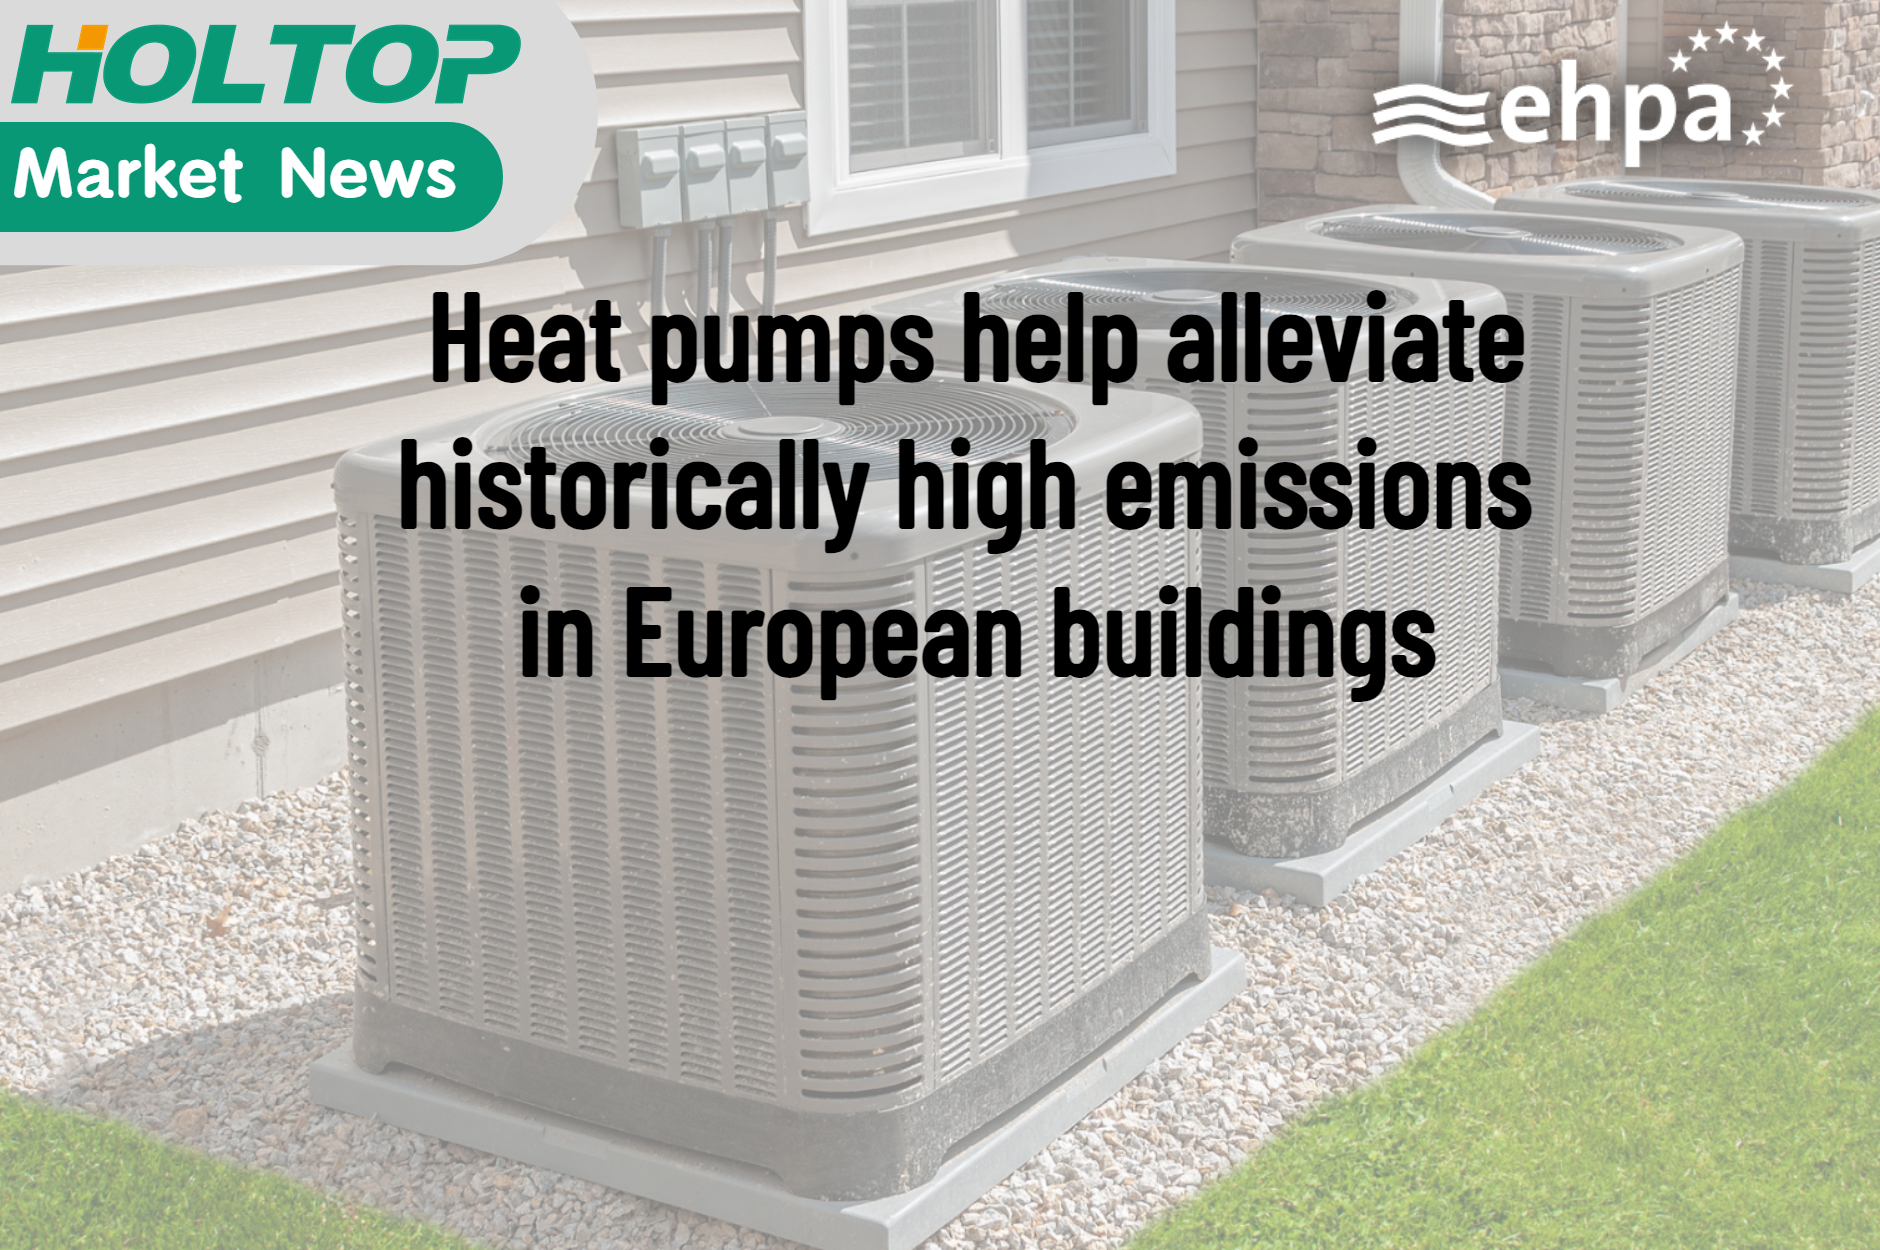 Warmtepompen helpen de historisch hoge emissies in Europese gebouwen te verminderen